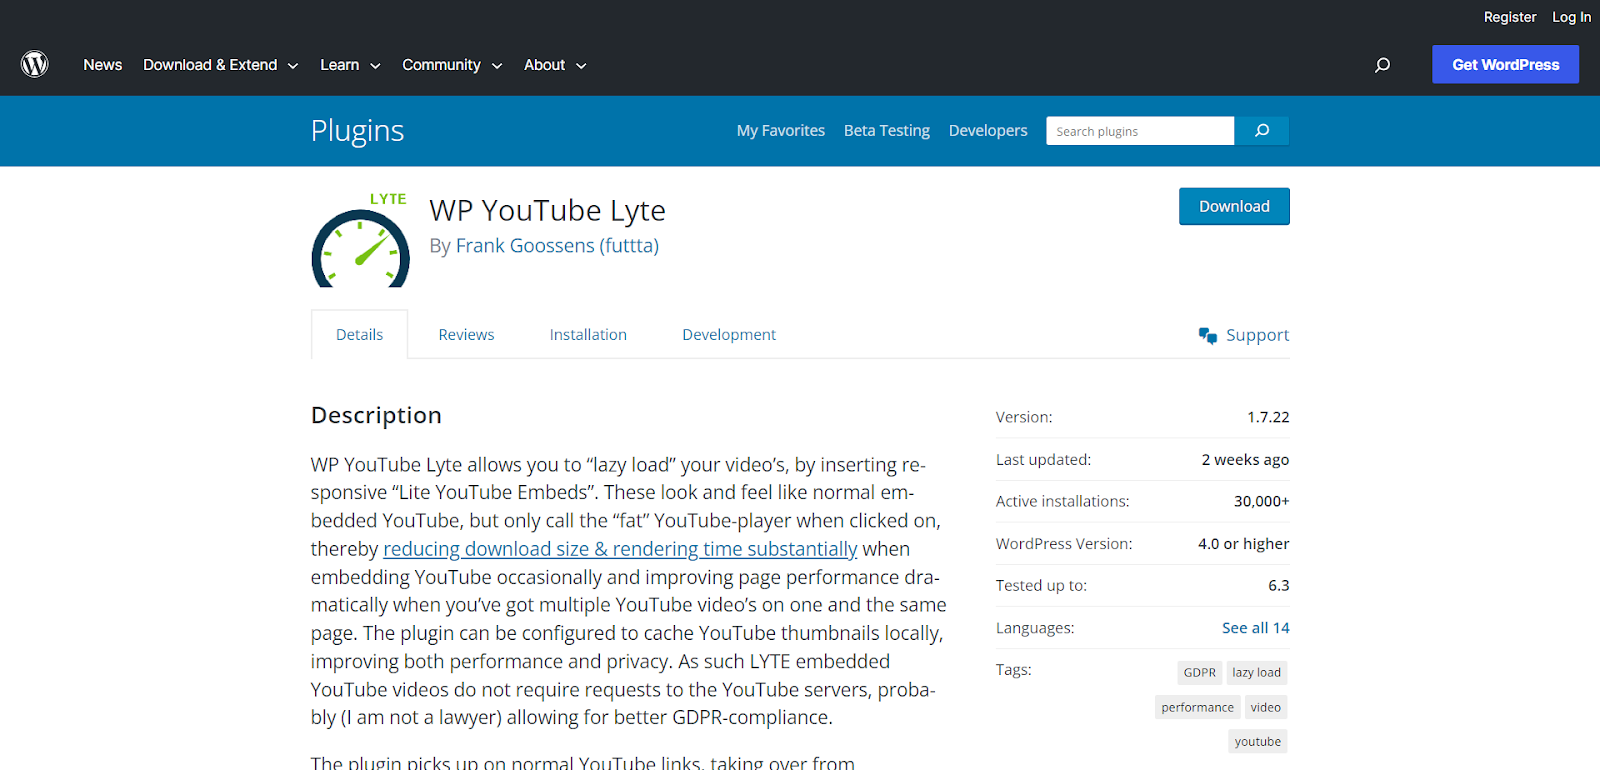 WP YouTube Lyte plugin